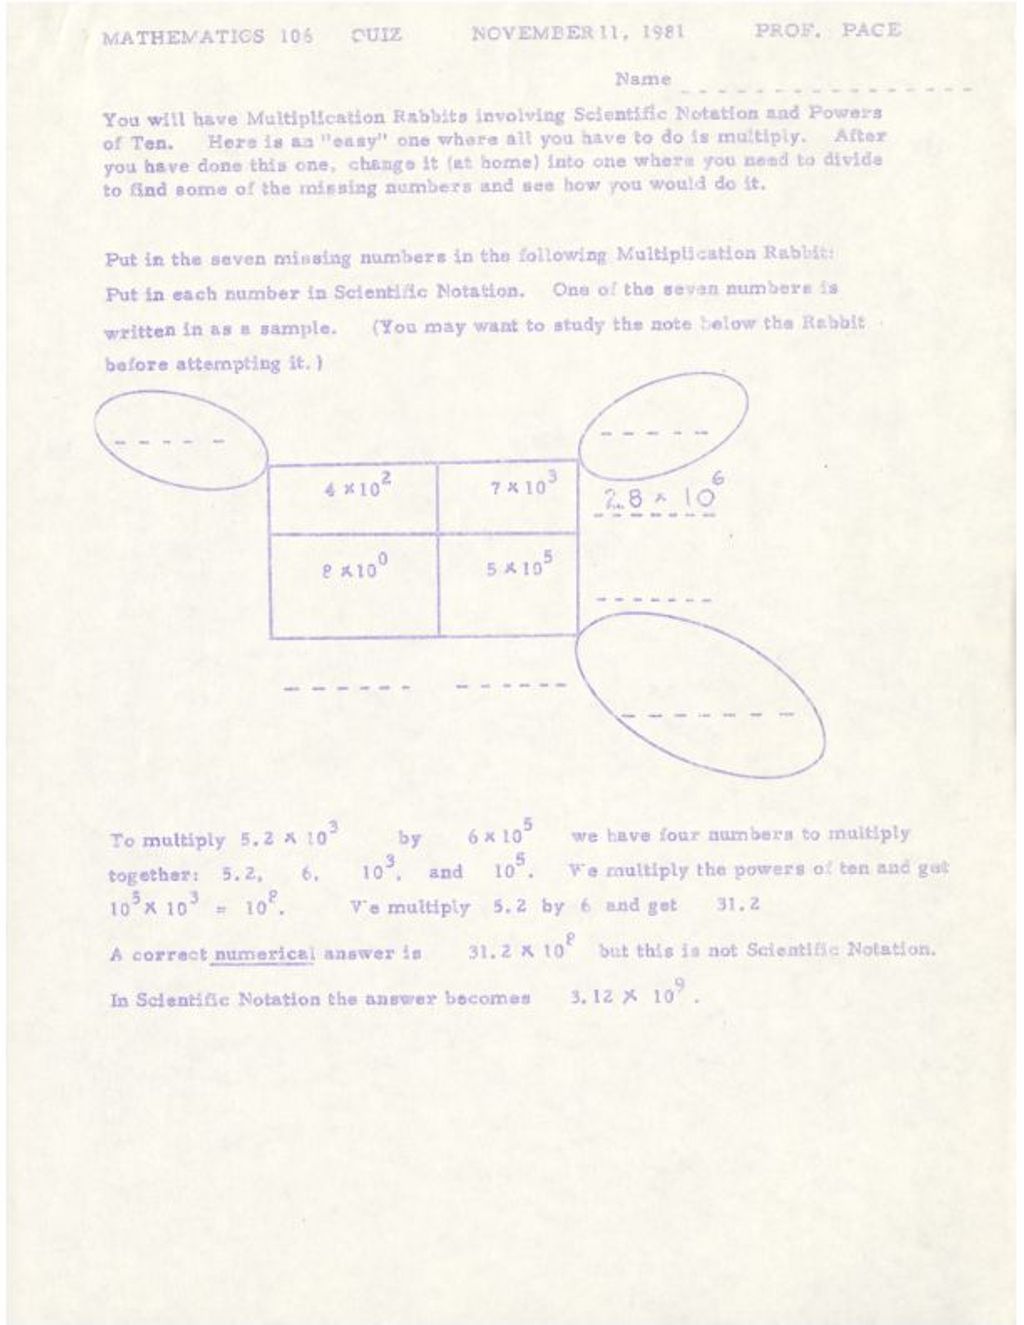 Mathematics106 Quiz Nov. 11, 1981 (multiplication rabbits)